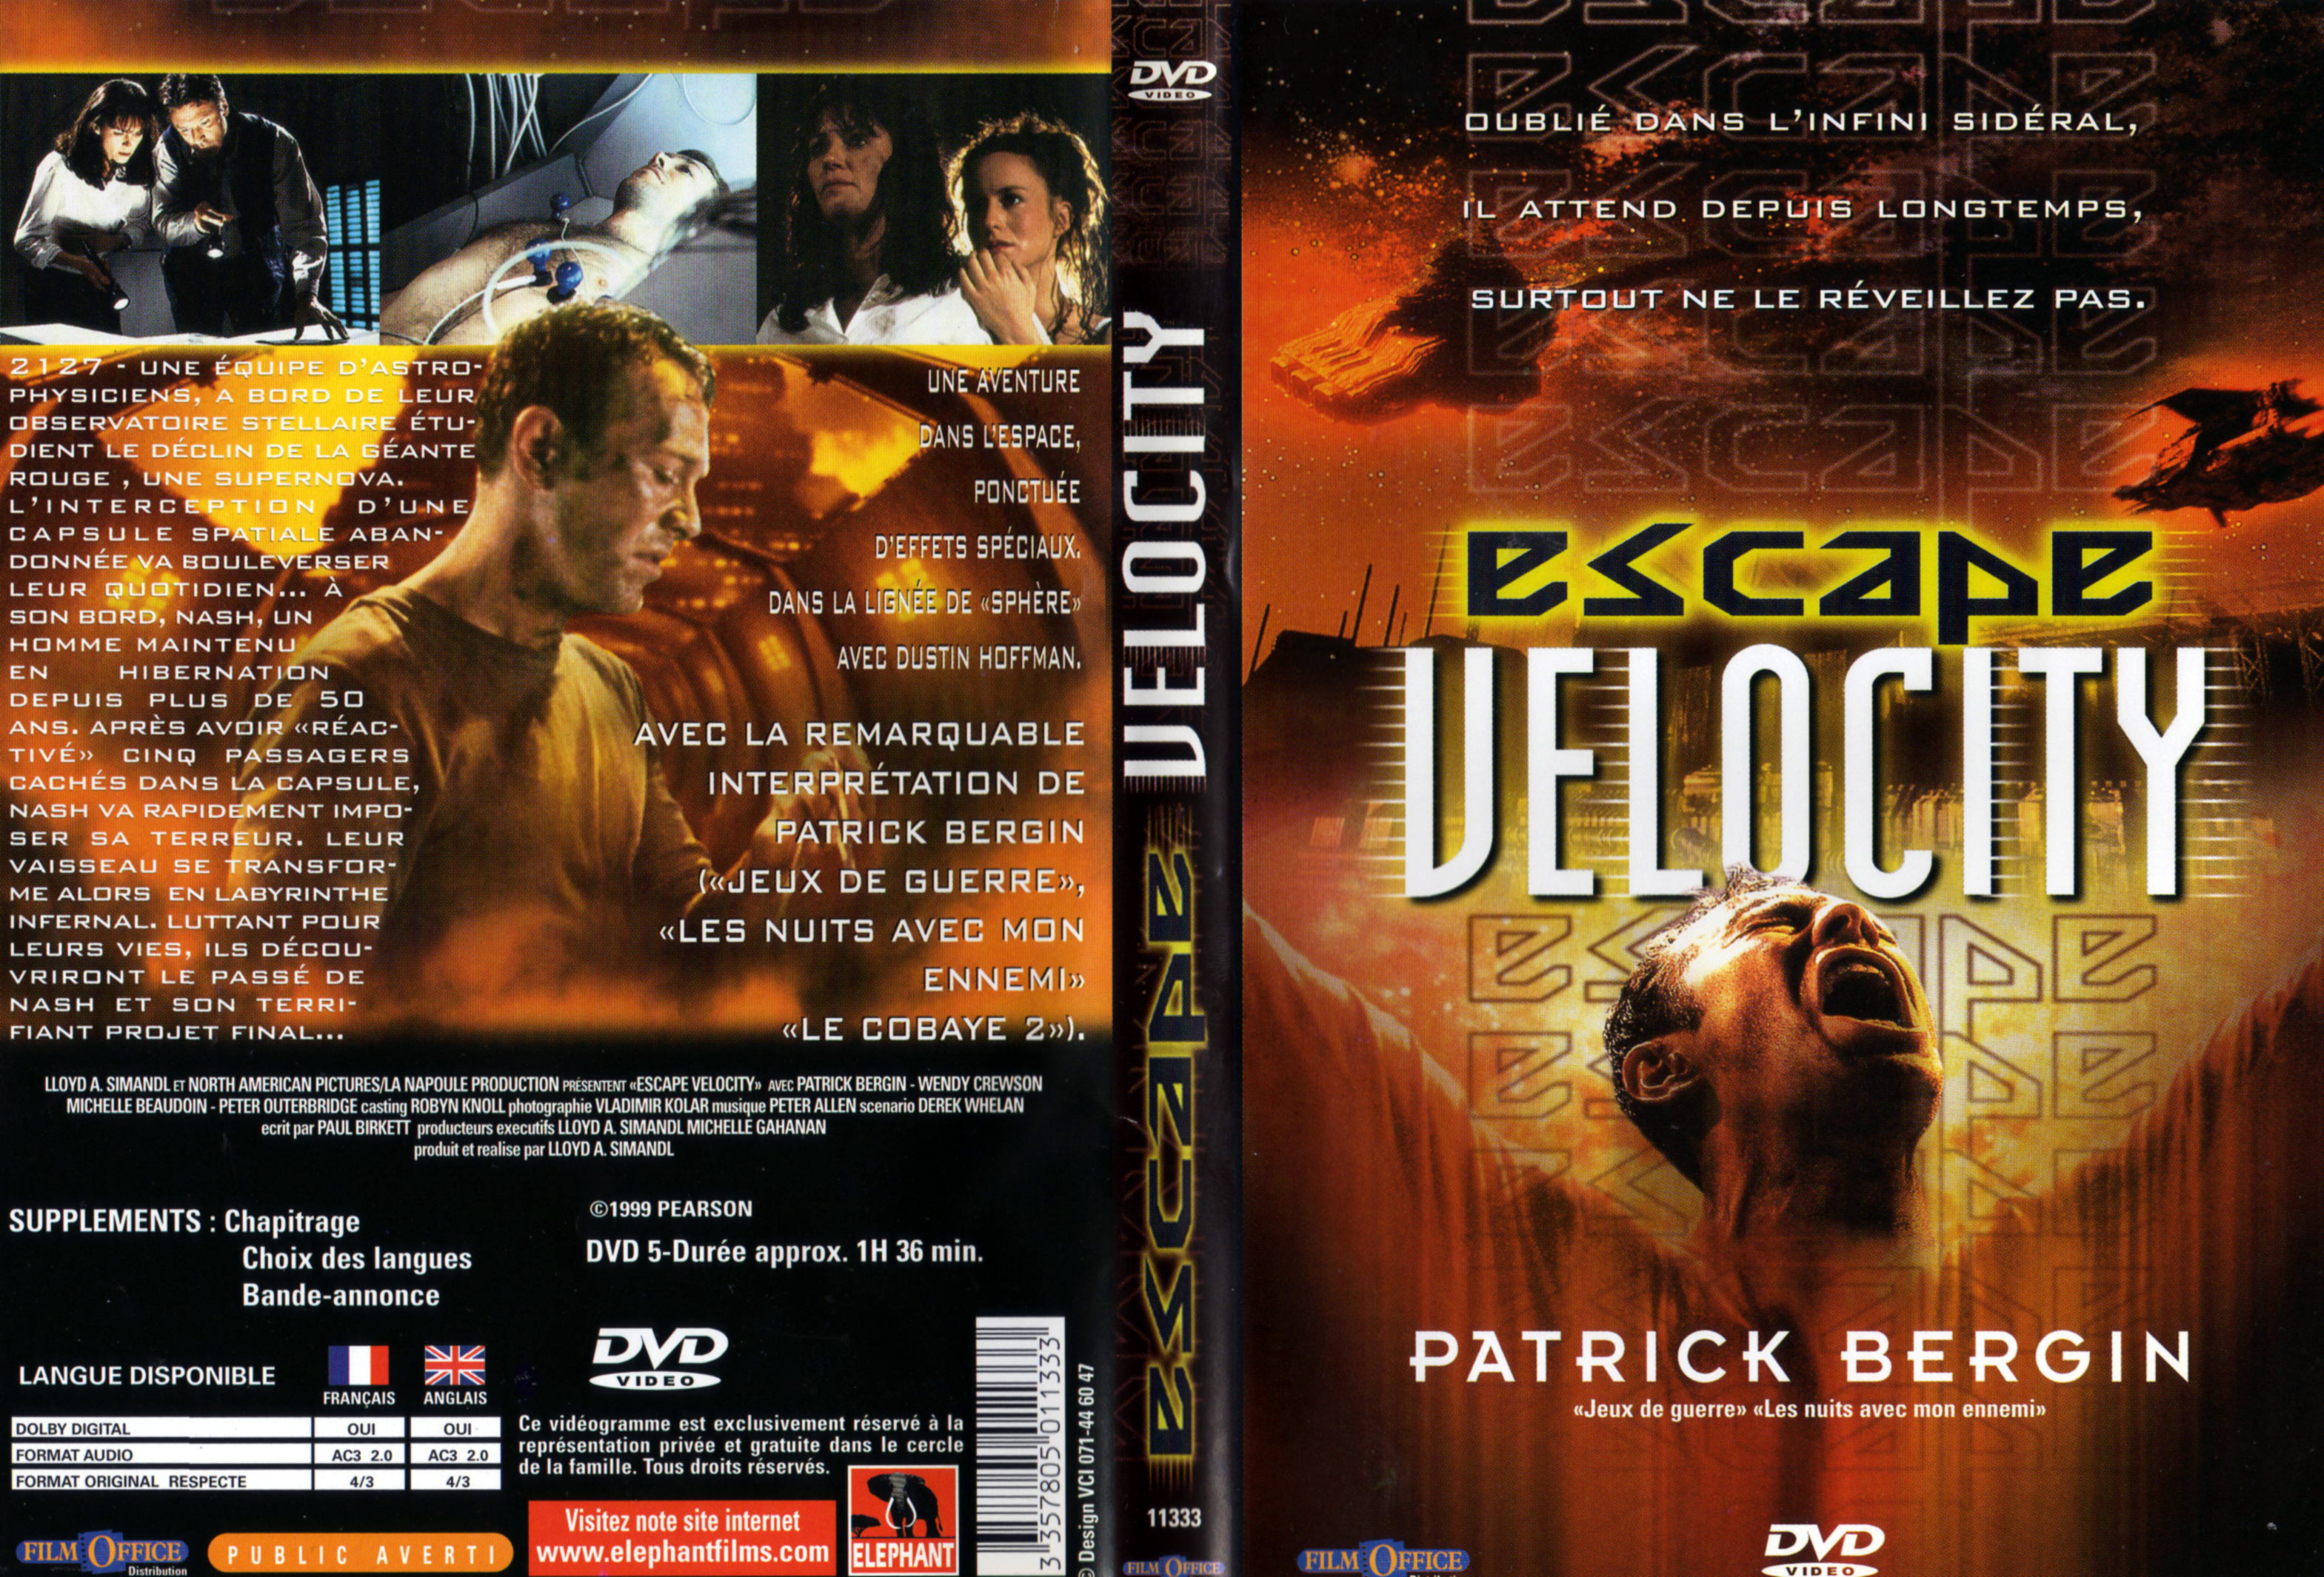 Jaquette DVD Escape velocity